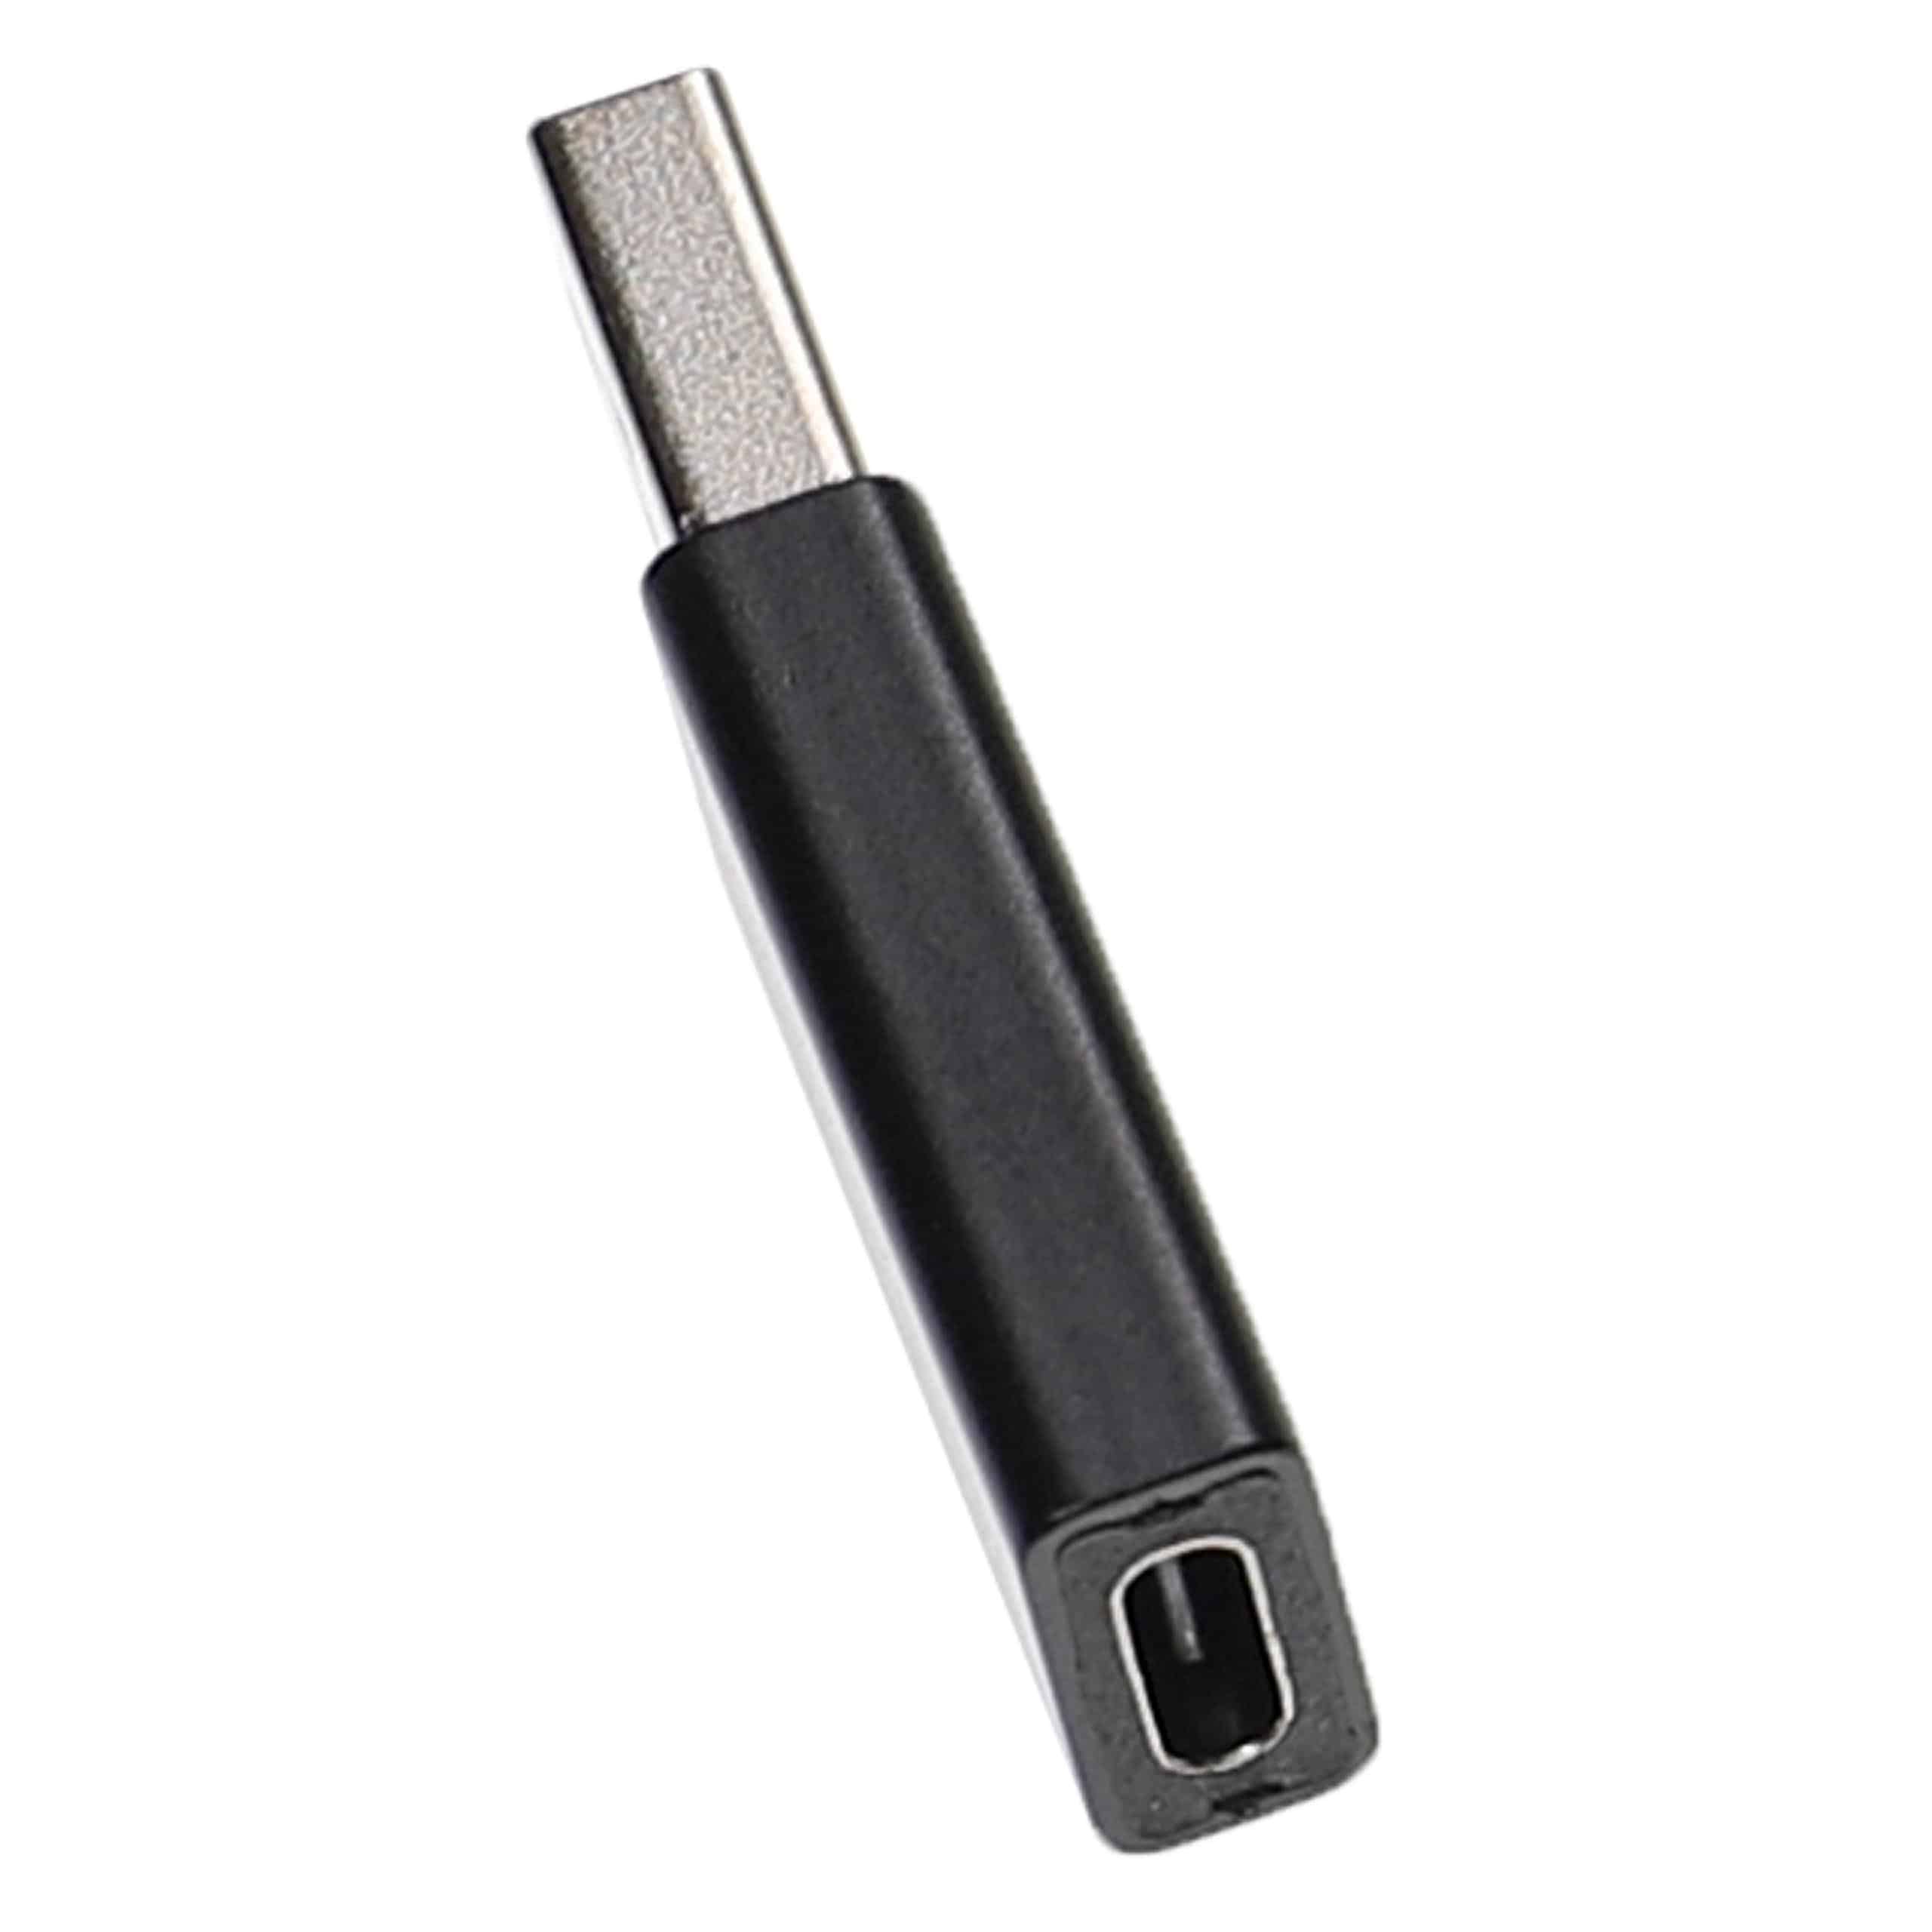 vhbw 2x Adaptateurs USB type C (f) vers USB 3.0 (m) compatible avec smartphone, ordinateur portable - noir